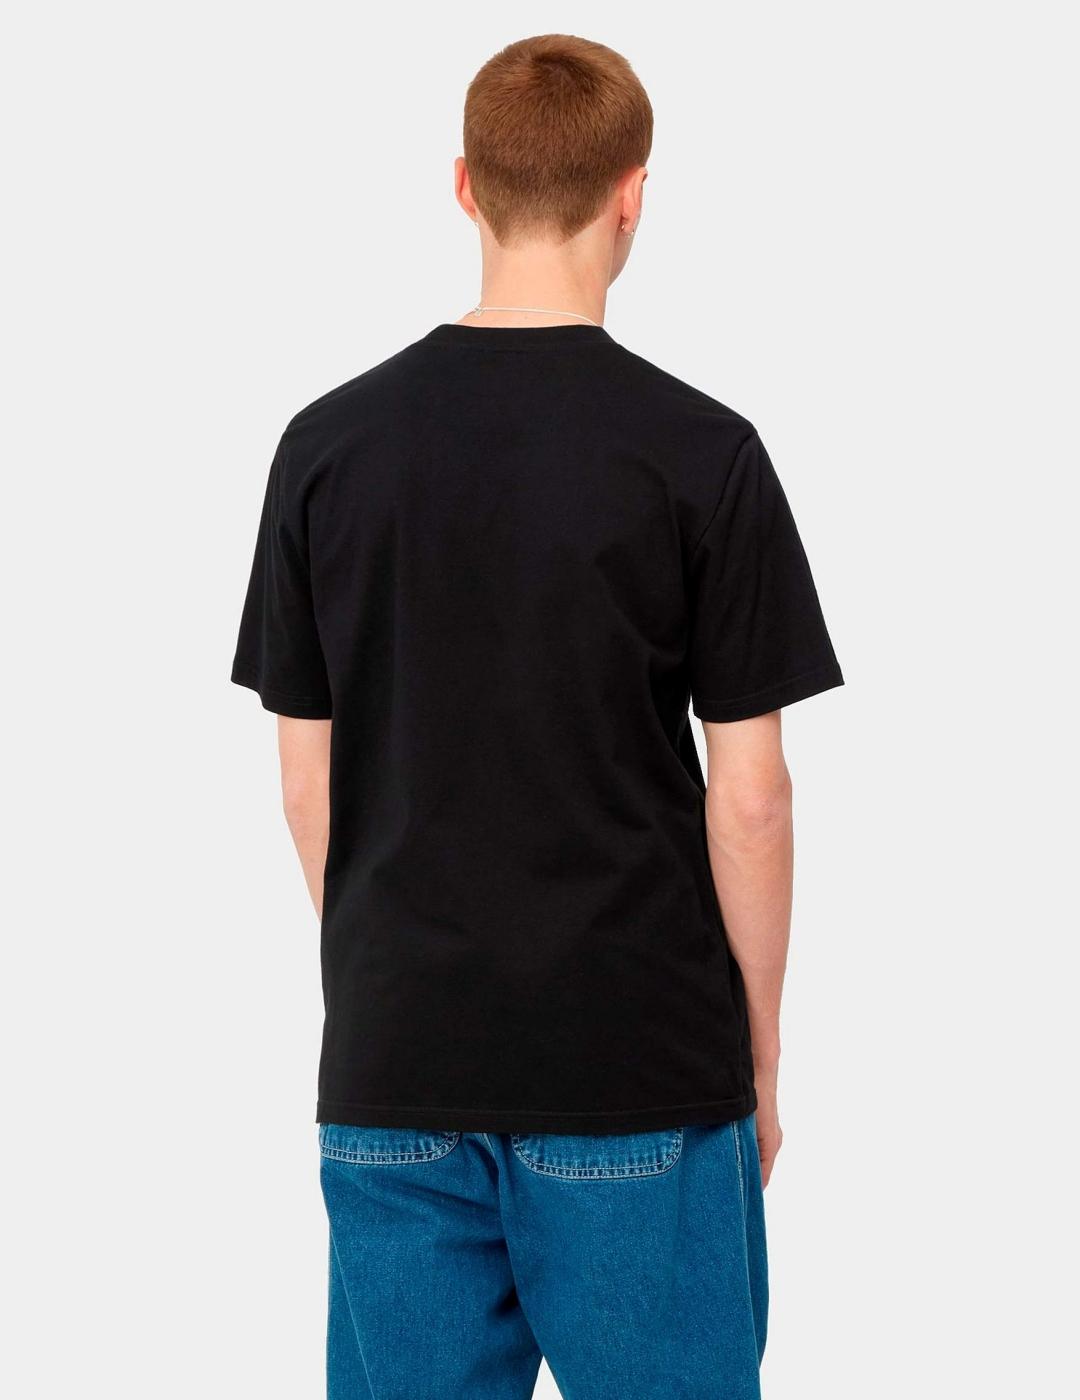 Camiseta CARHARTT SCRIPT - Black / White